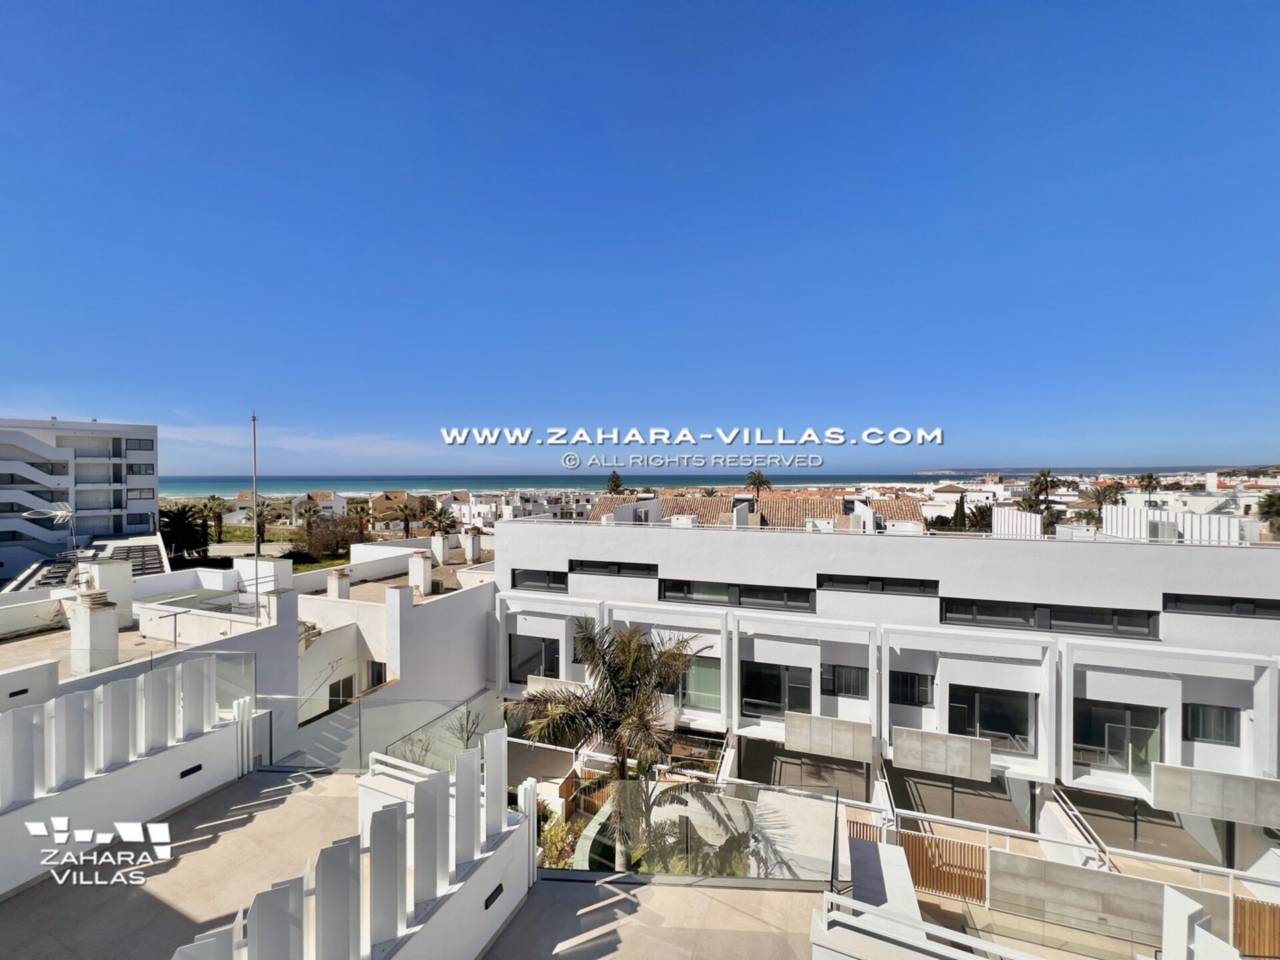 Imagen 1 de Promoción obra nueva terminada "EL OASIS DE ZAHARA" viviendas adosadas junto al mar